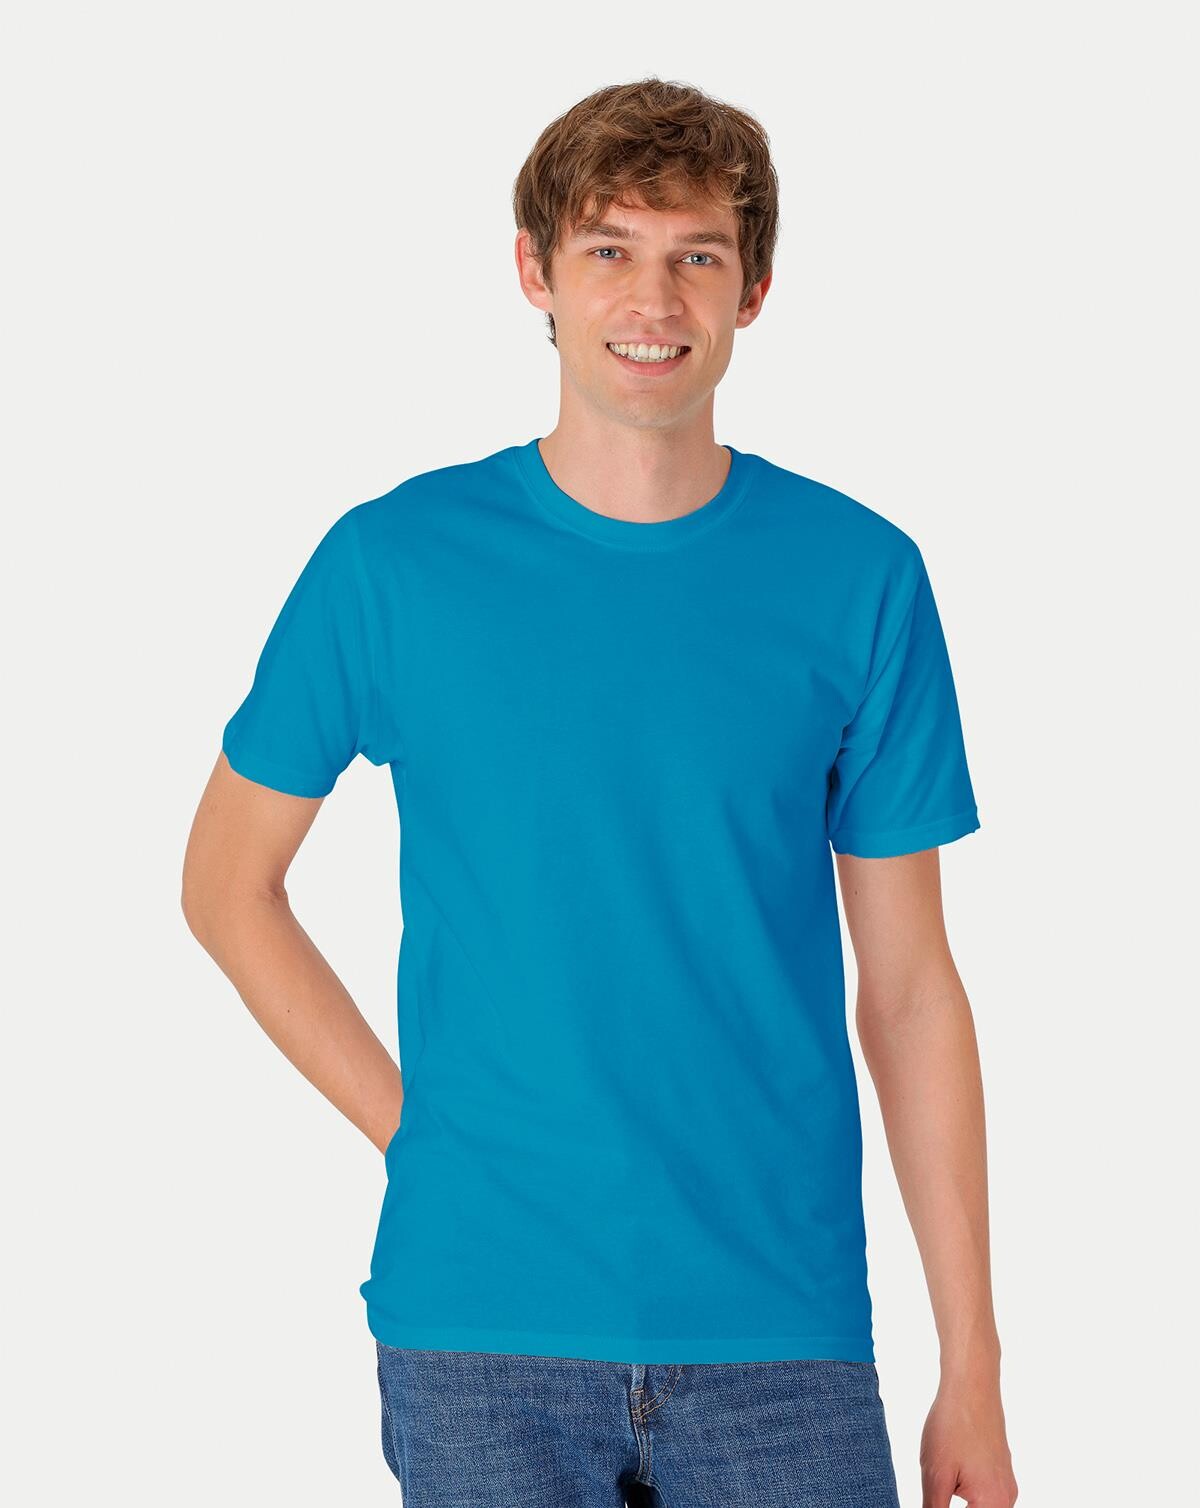 Neutral Organic - Mens Classic T-shirt (Safir, 2XL)